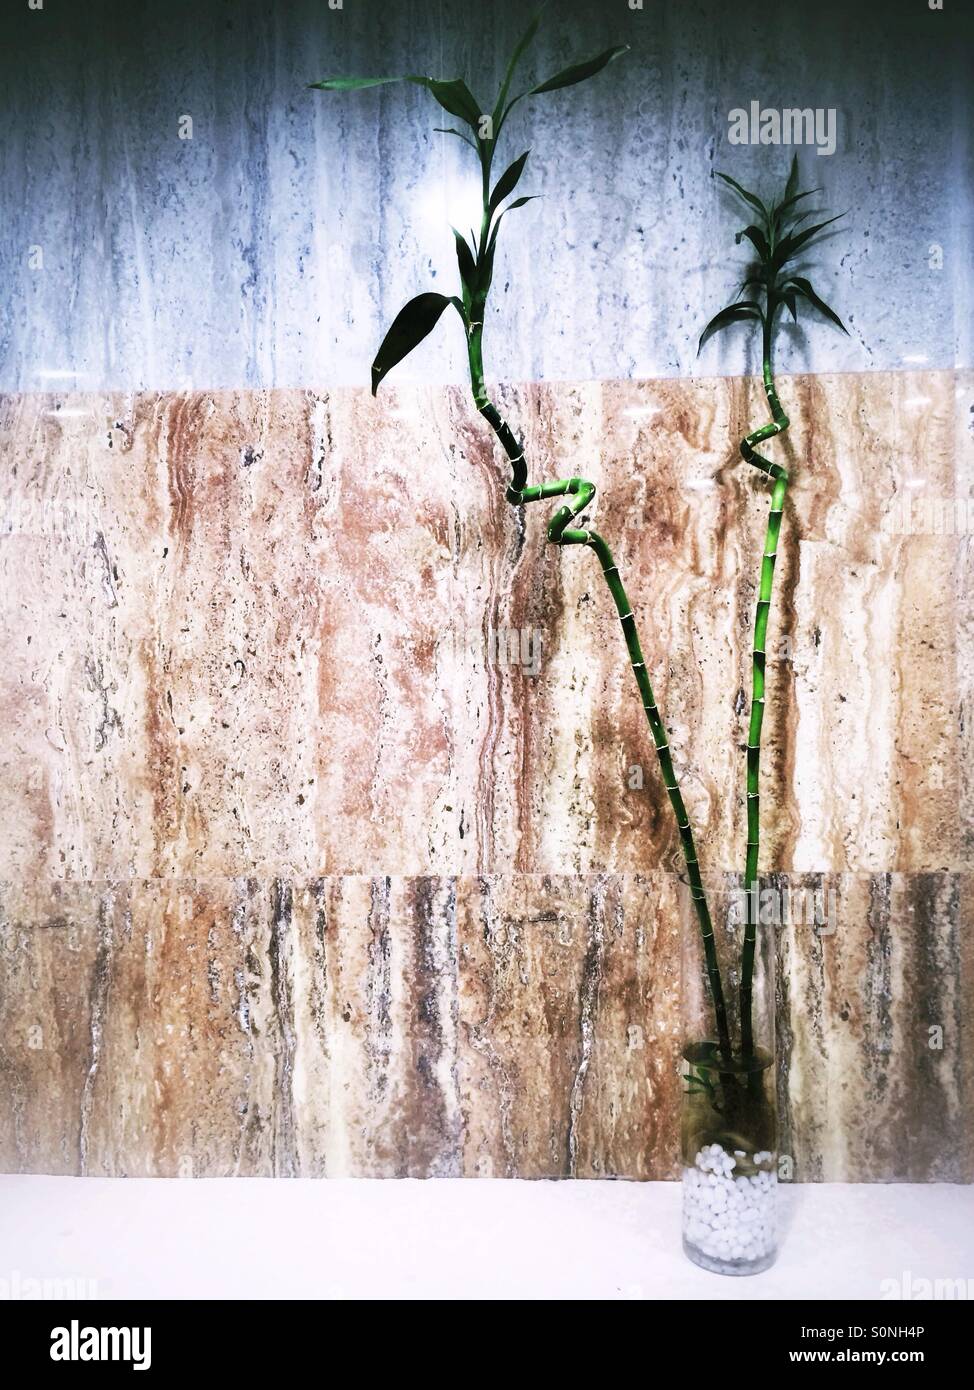 Les plantes de bambou dans un vase Banque D'Images